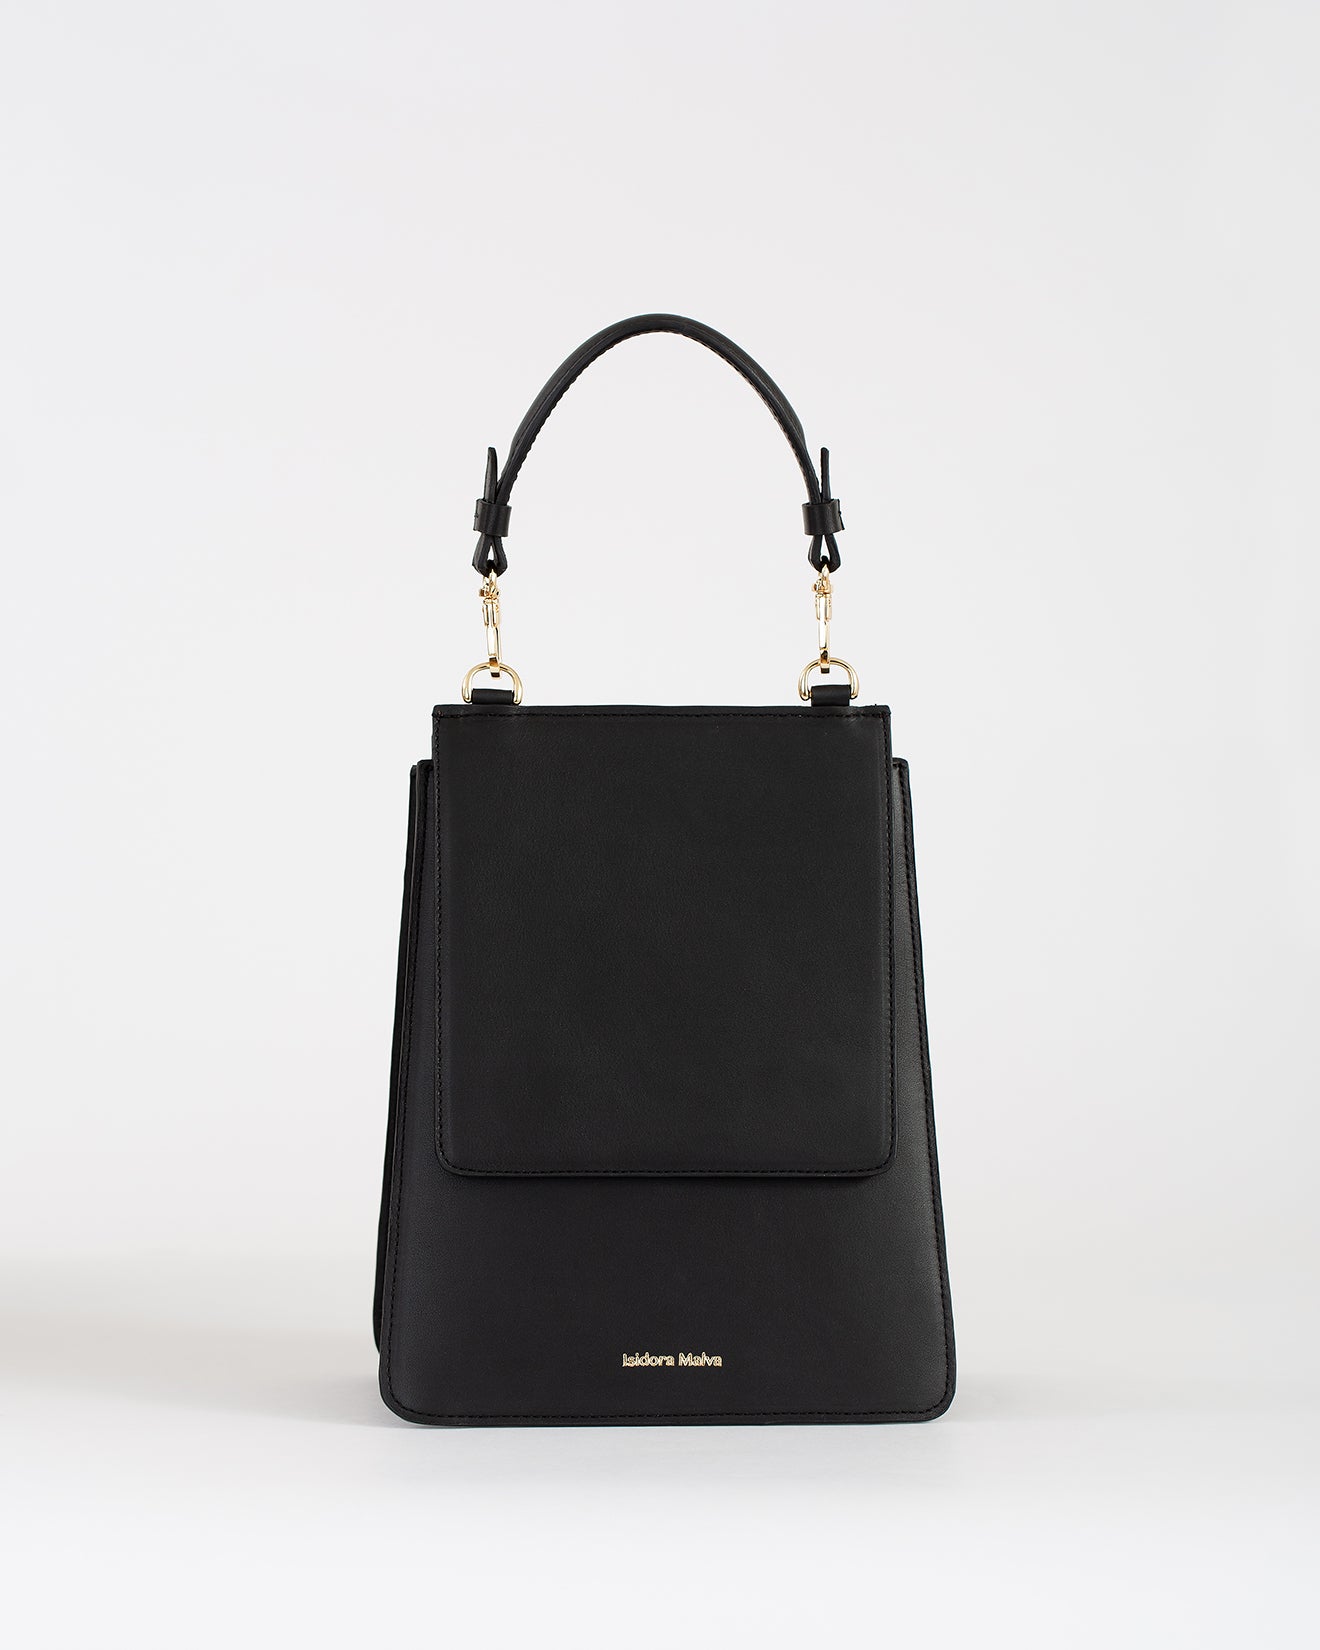 Pre-order La Virginia handbag Black